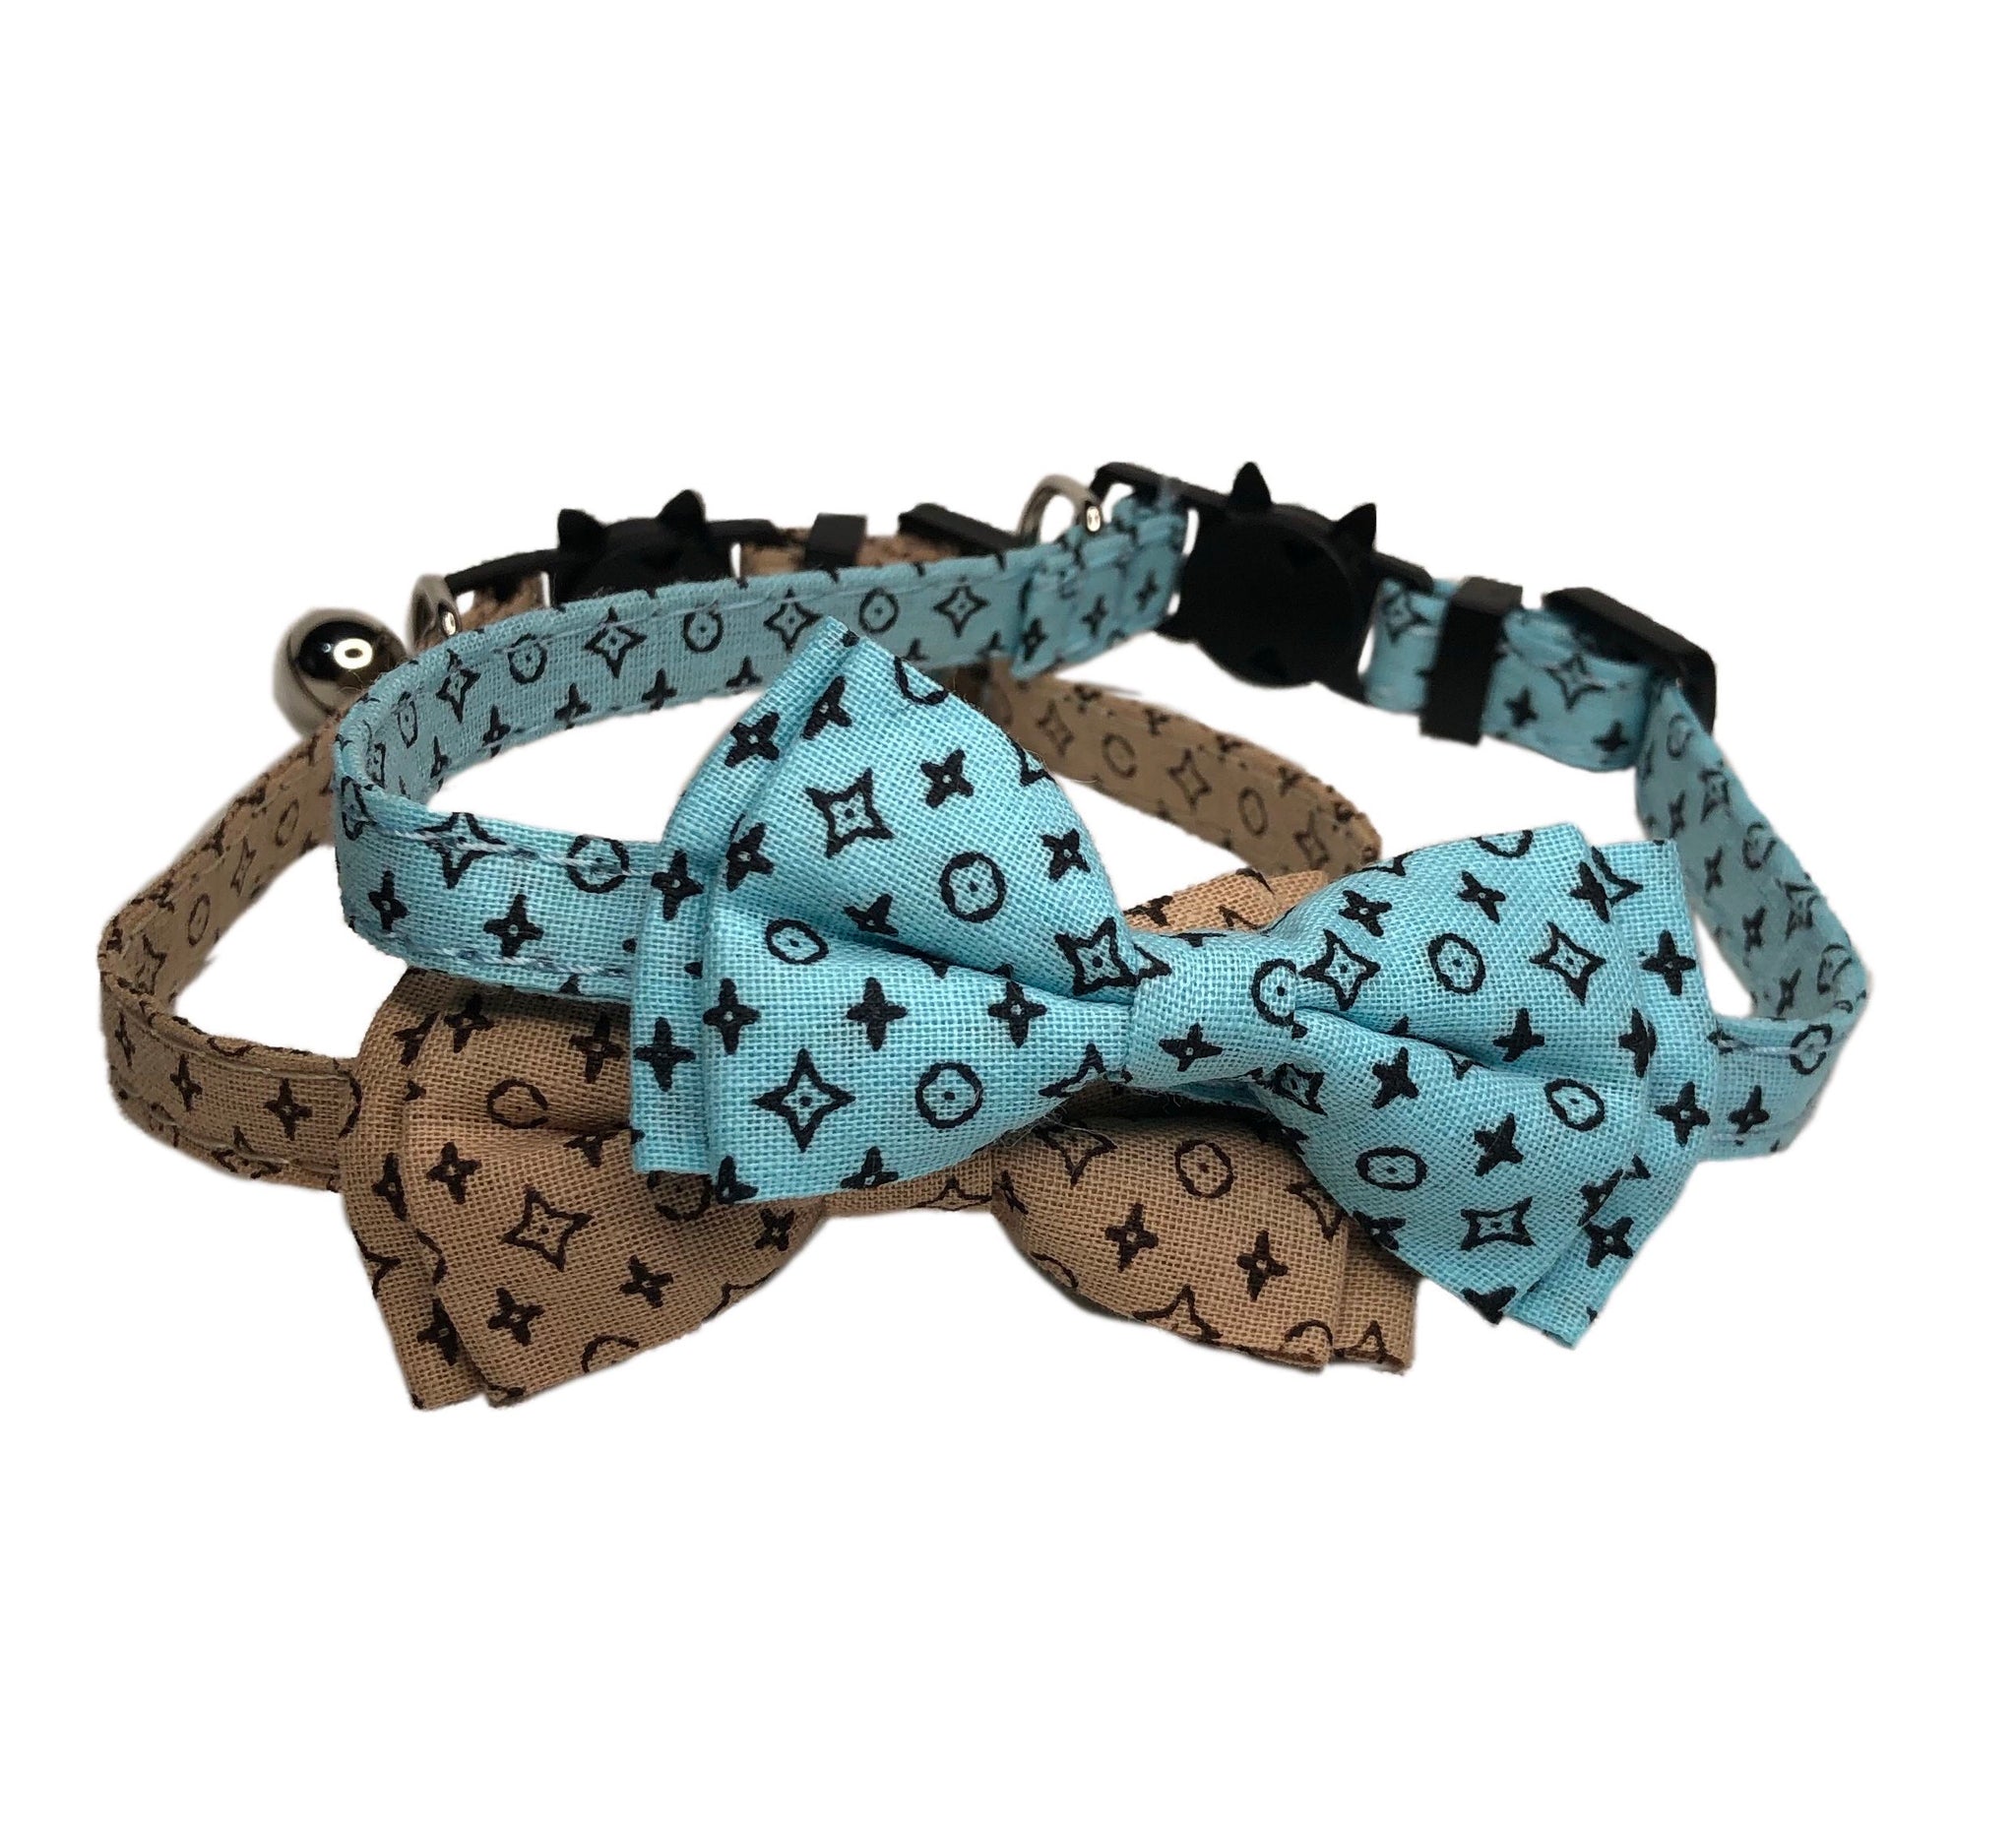 LV, Louis Vuitton inspired Dog Collar!!!!